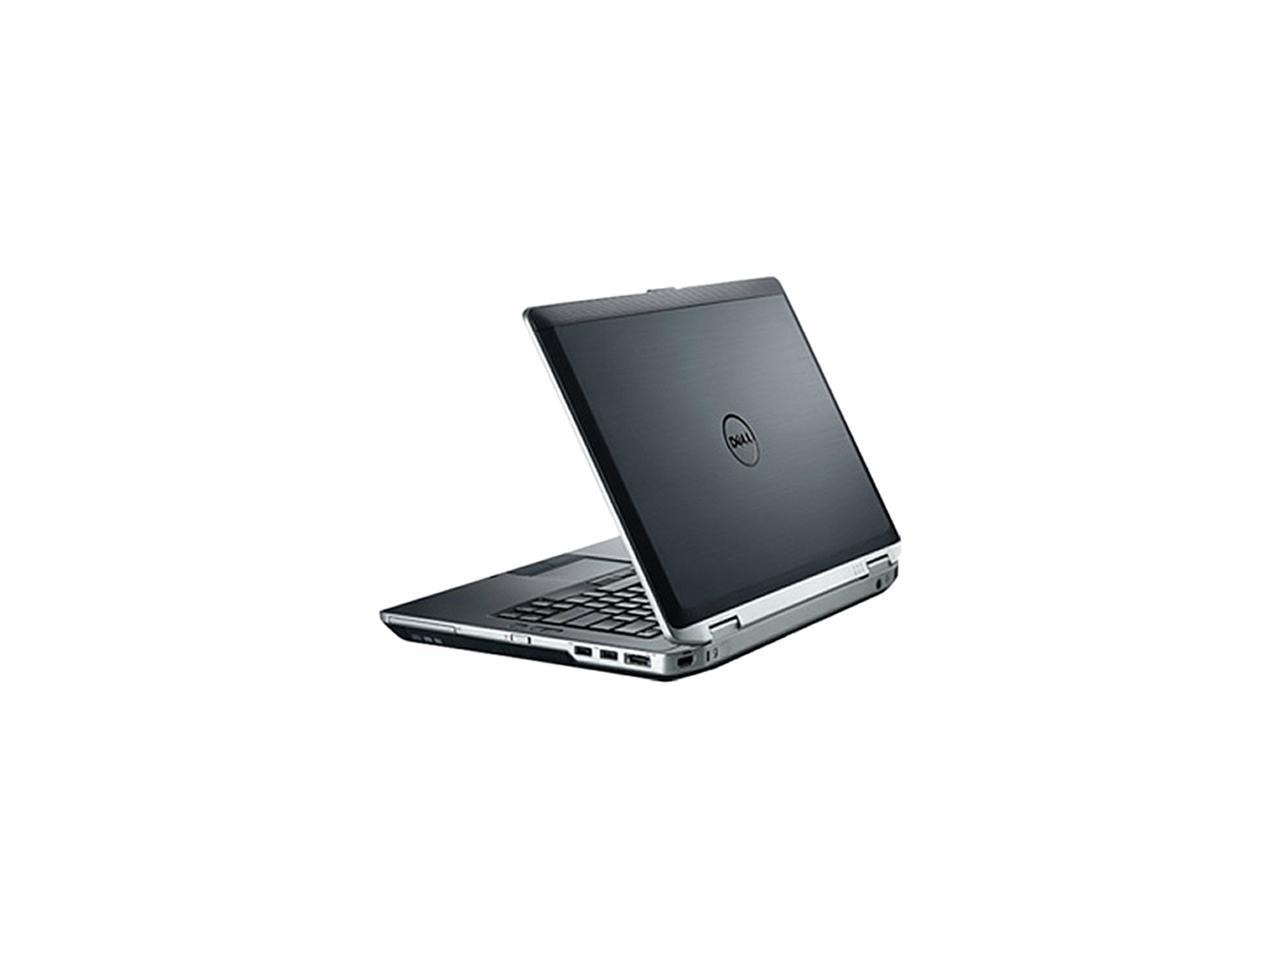 DELL Laptop Latitude E6430 Intel Core i7 3rd Gen 3540M (3.00GHz) 4GB